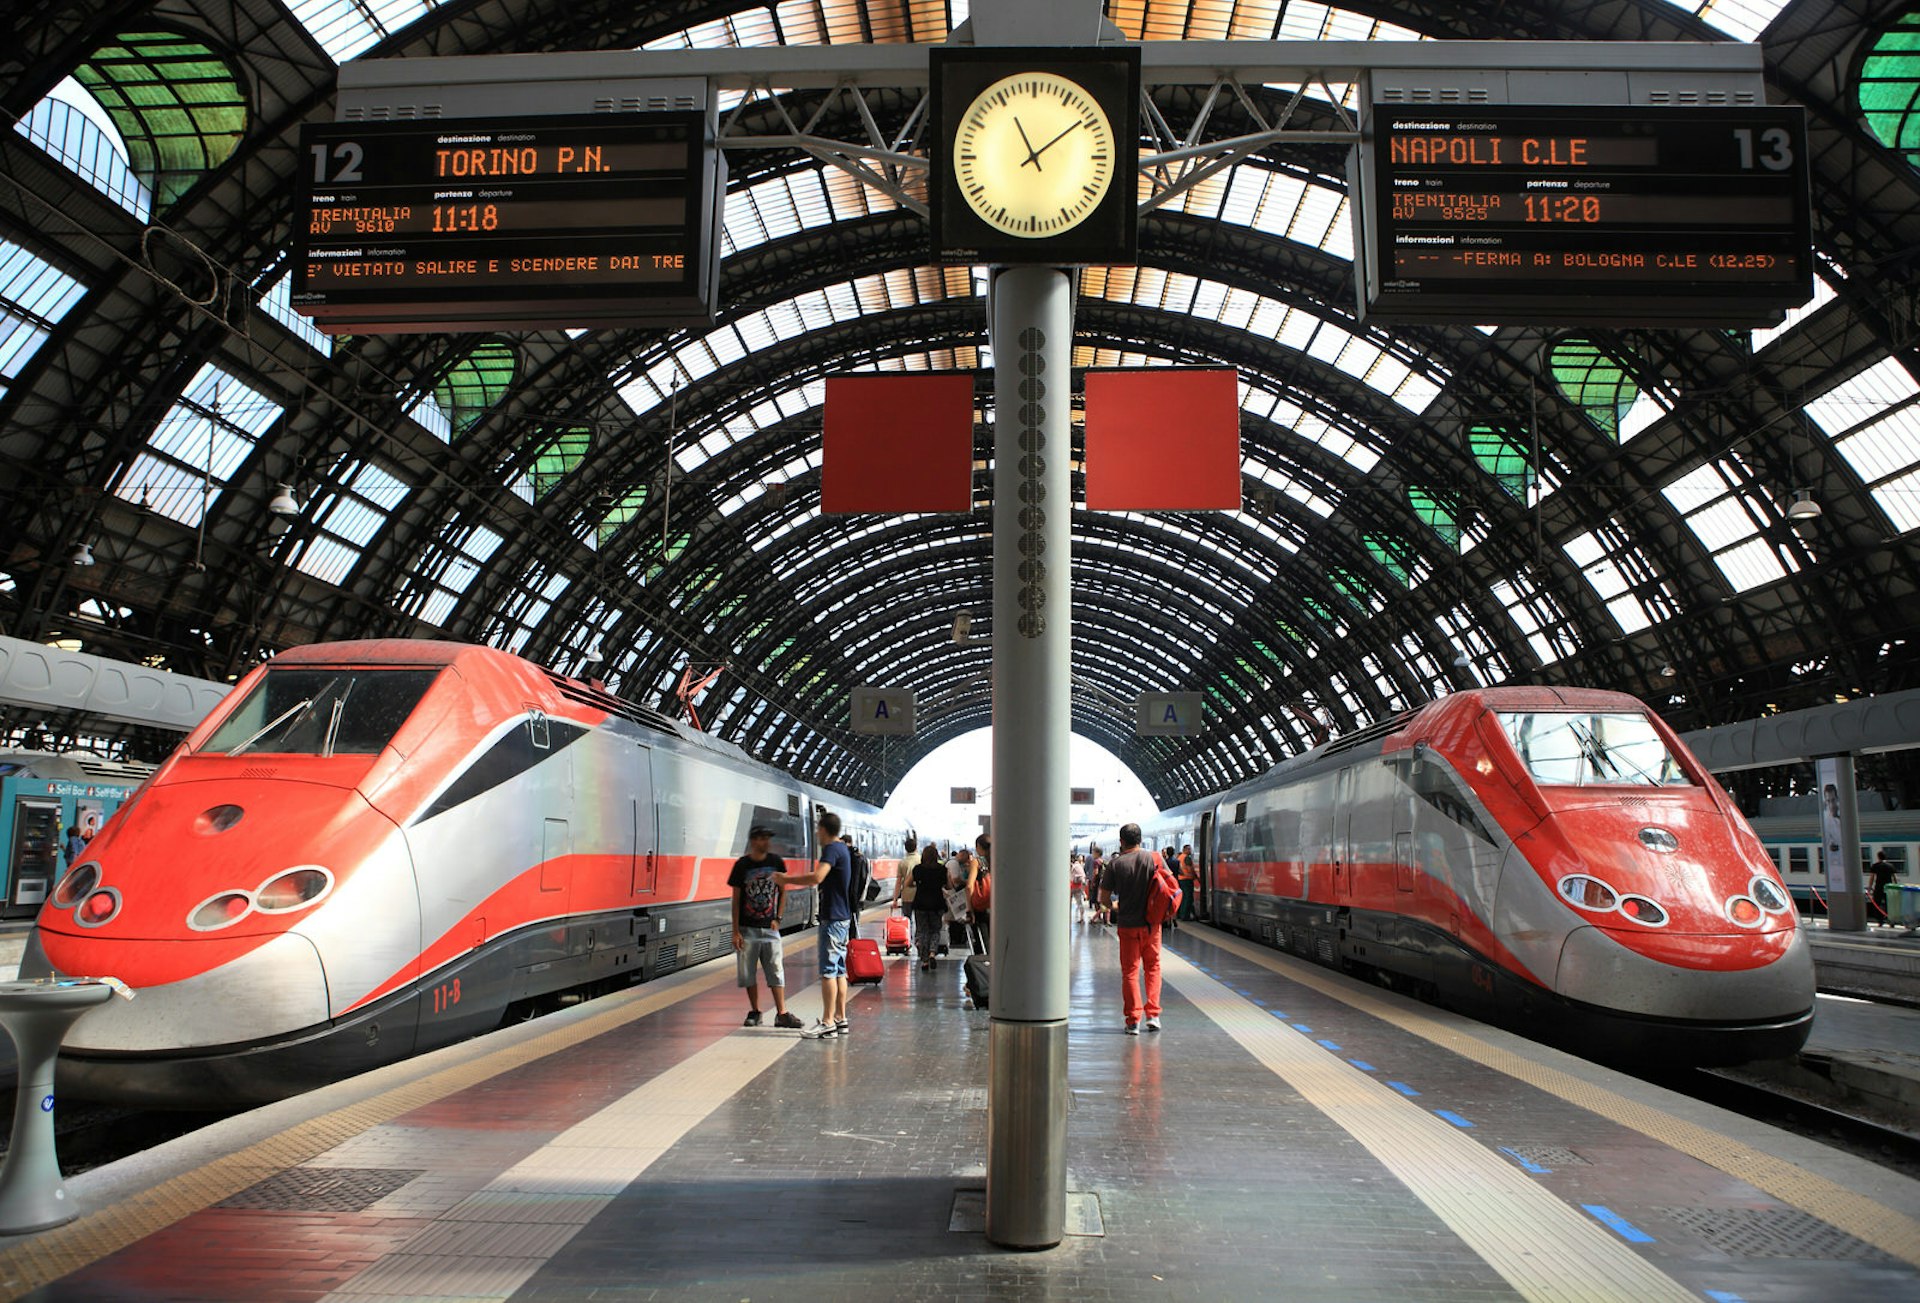 Two Frecciarossa trains await departure in Milan's beautiful Stazione Centrale